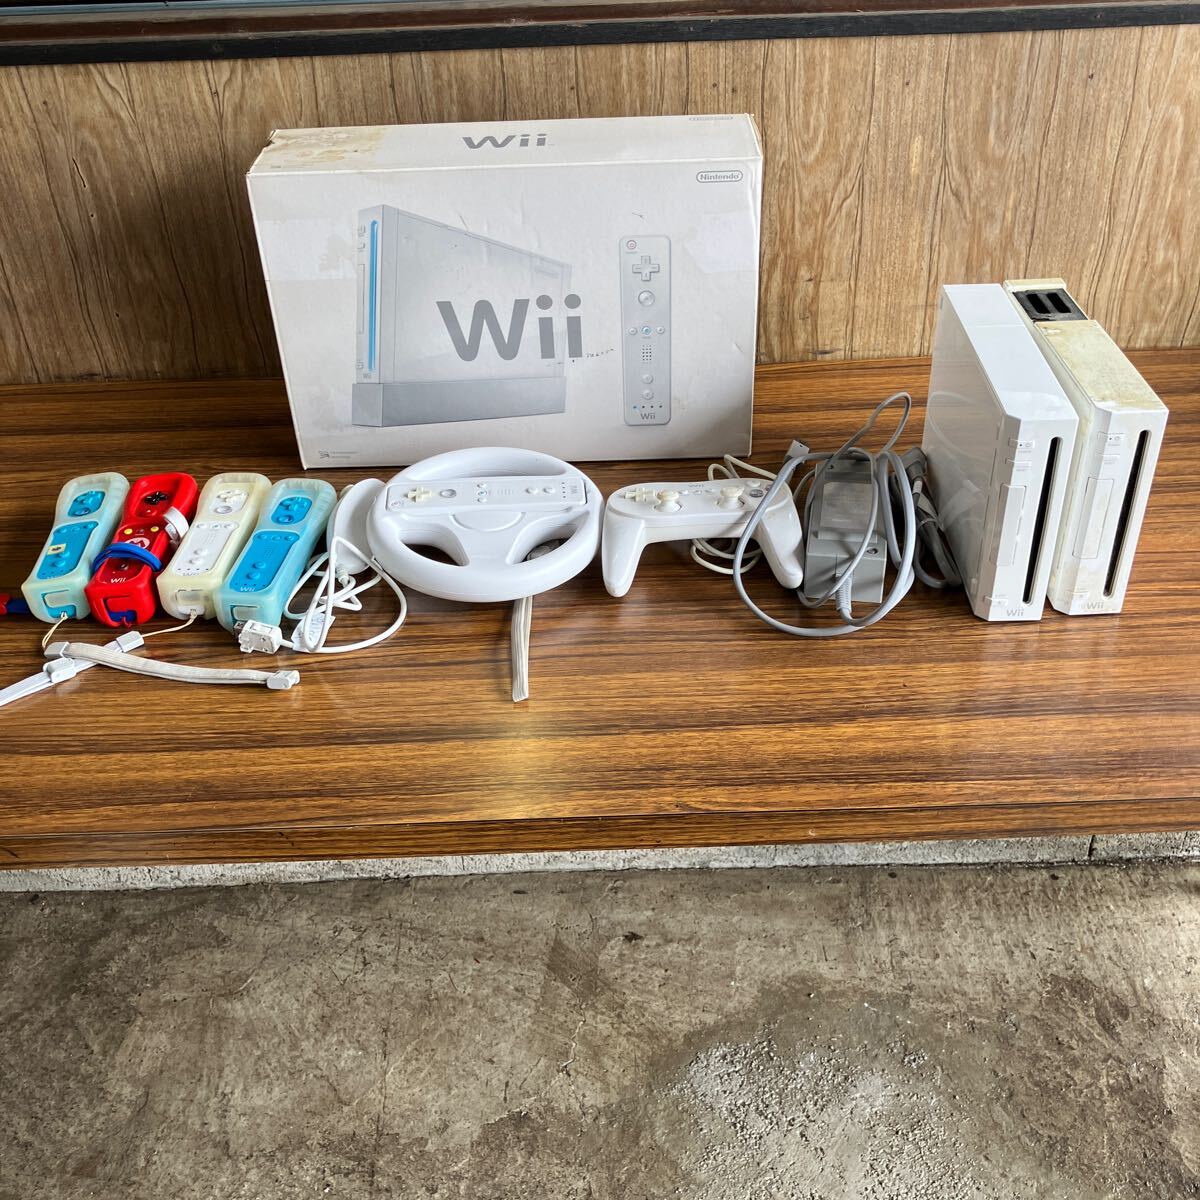 Nintendo Wiiまとめ WiiリモコンWiiUコントローラー ホワイト レッド ライトブルー RVL-036 ヌンチャク ACアダプター Wii 本体 RVL-001 の画像1